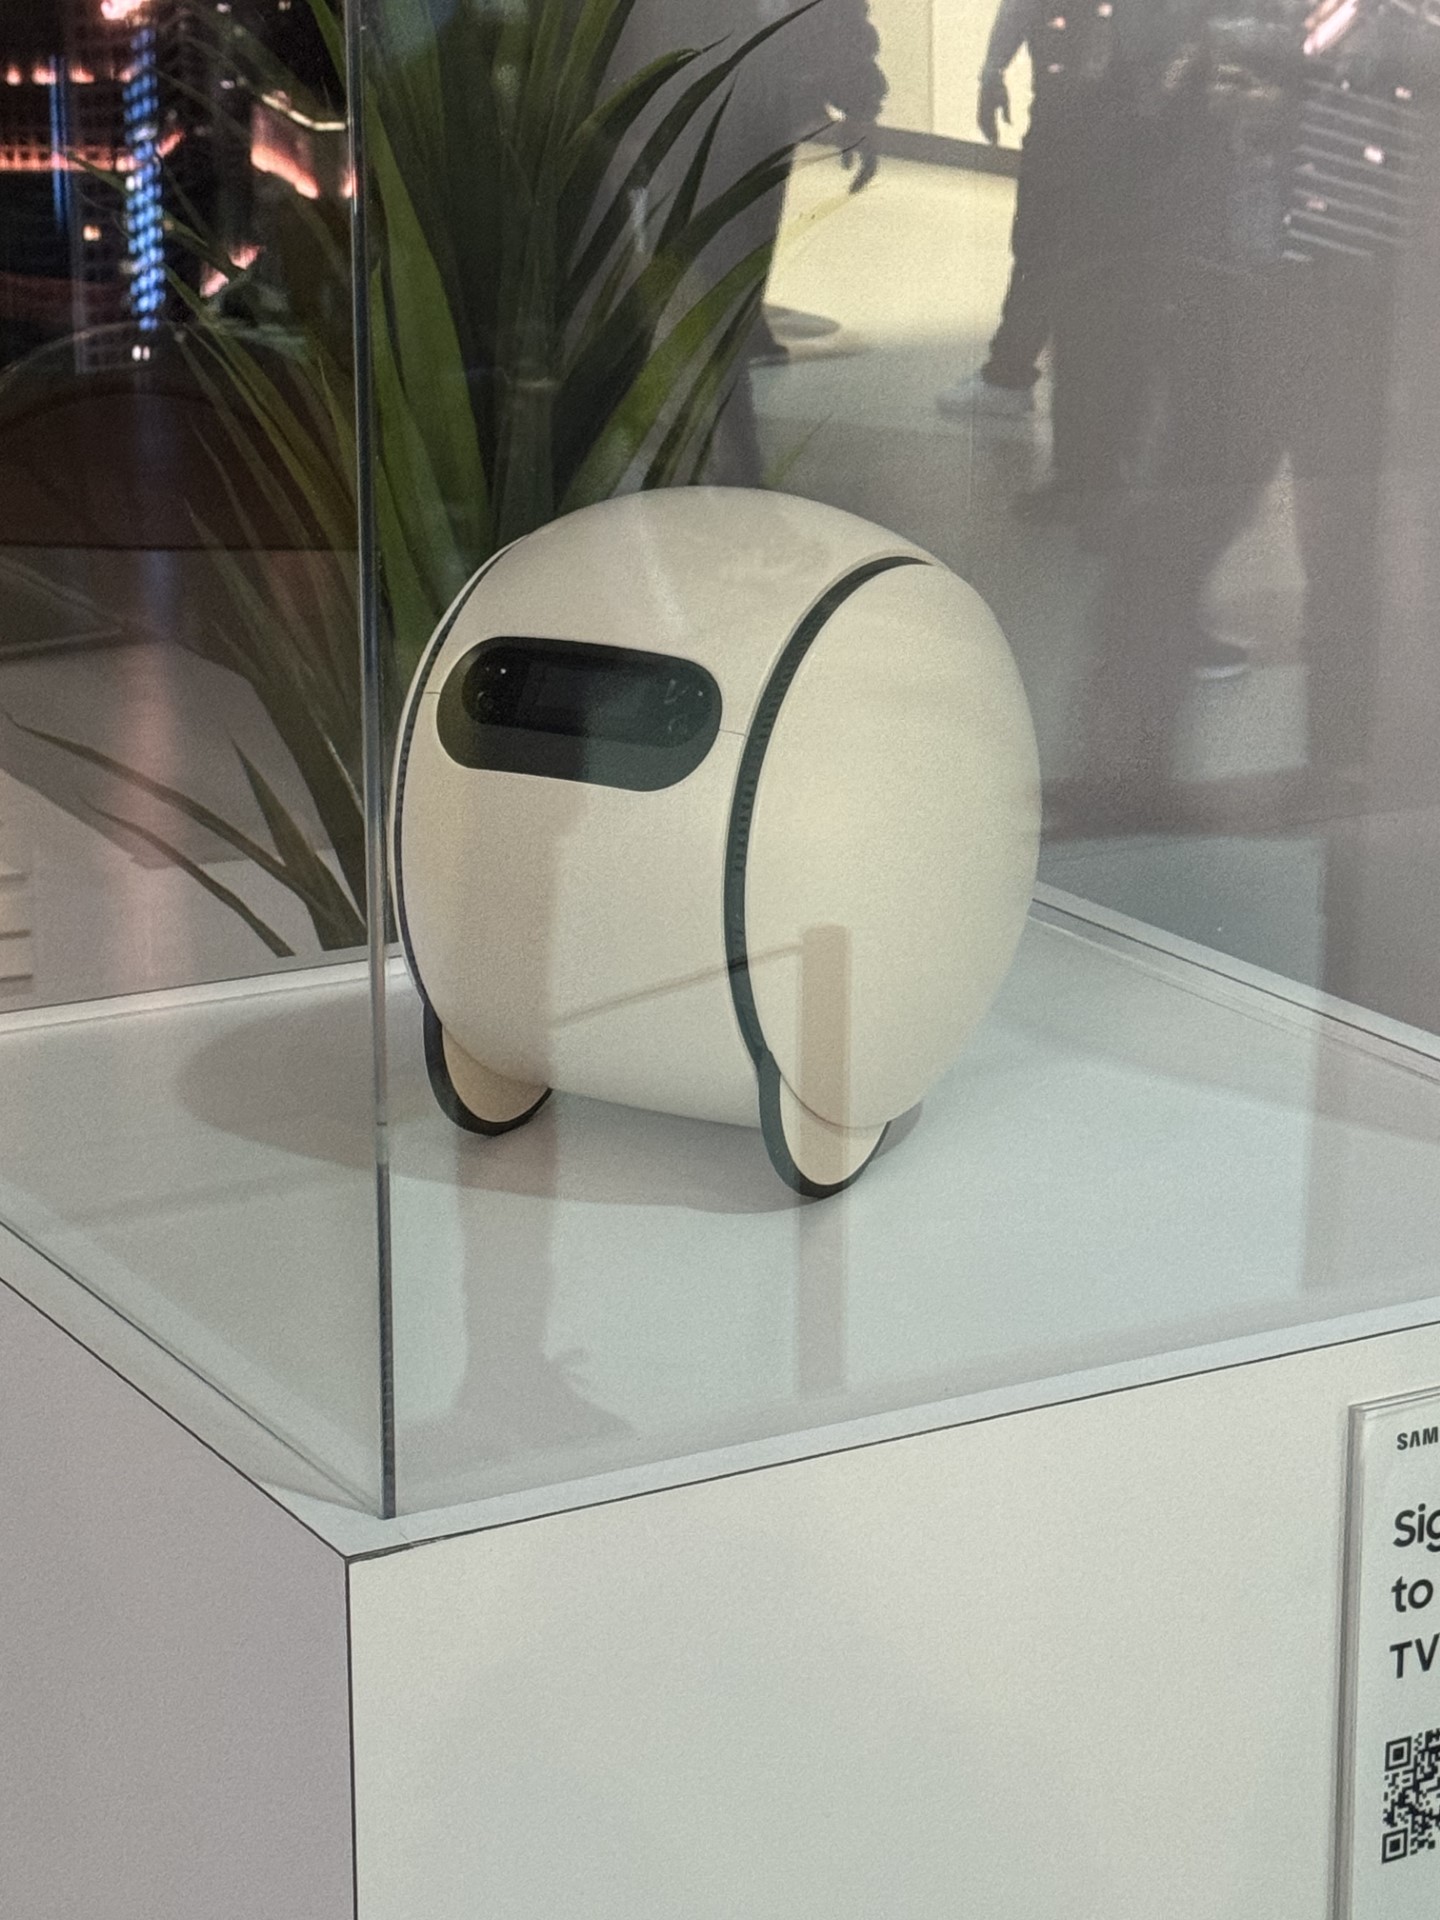 Samsung's Ballie robot, an AI-powered home robot assistant